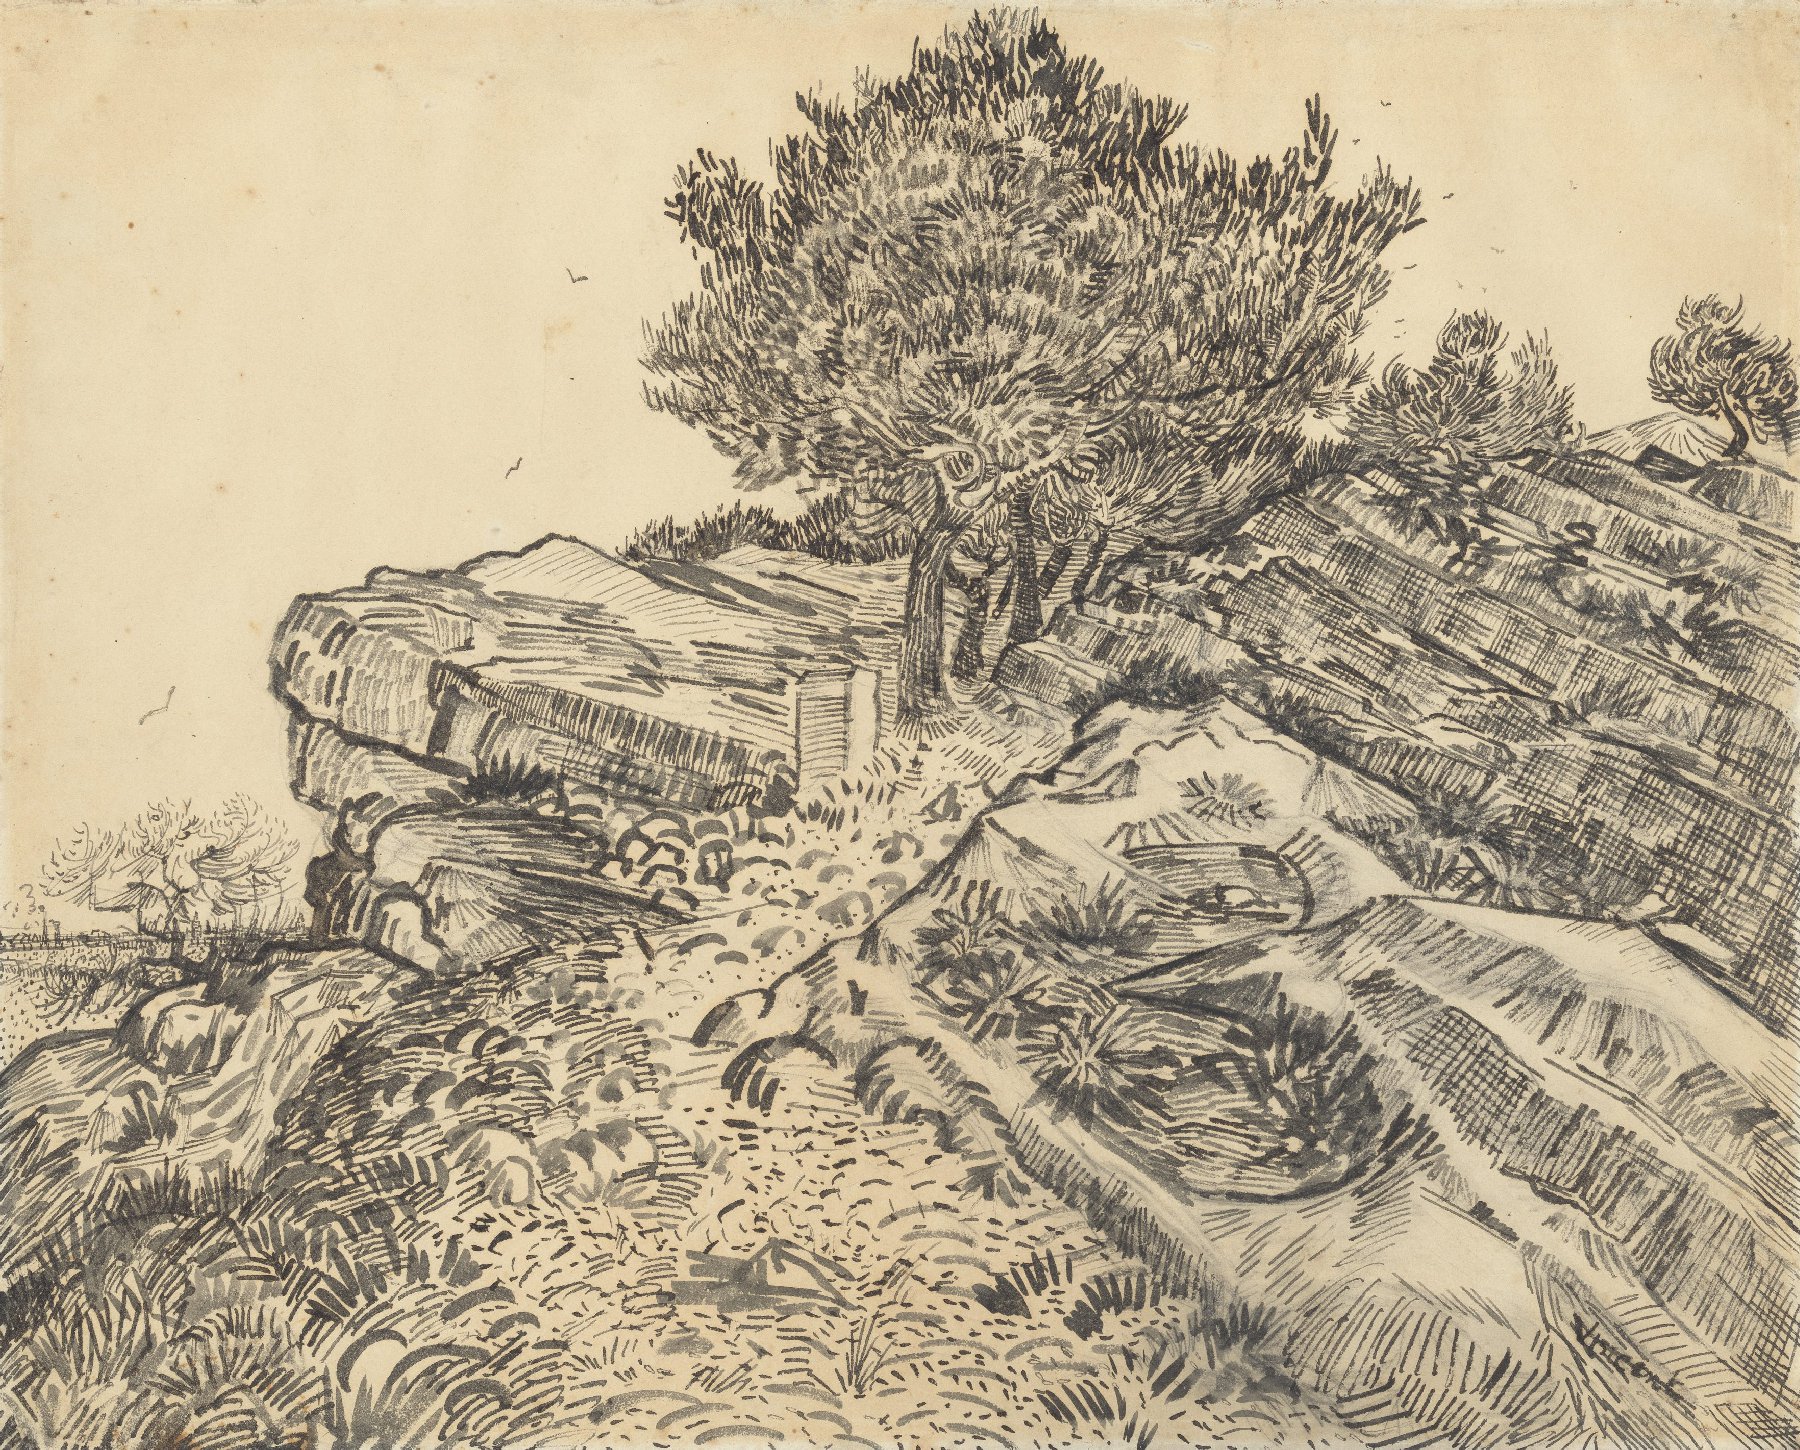 De rots van Montmajour met pijnbomen Vincent van Gogh (1853 - 1890), Arles, juli 1888